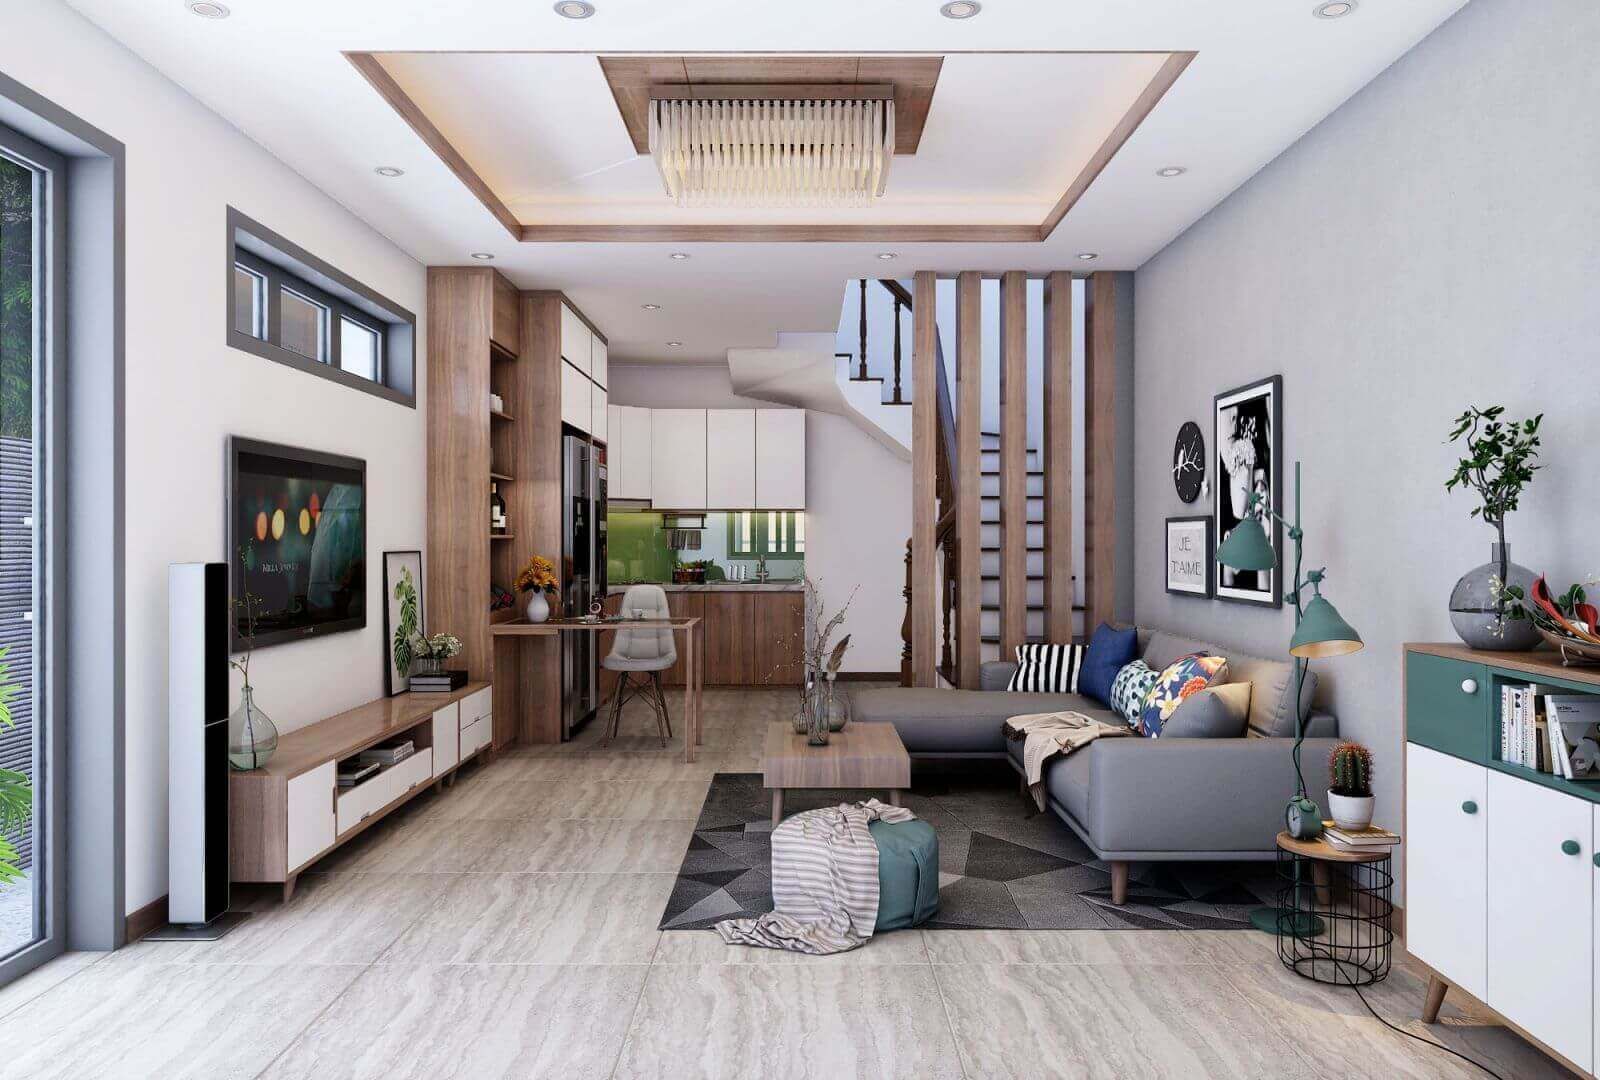 Mẫu thiết kế nội thất căn hộ chung cư 75m2 theo phong cách hiện đại, tiện nghi